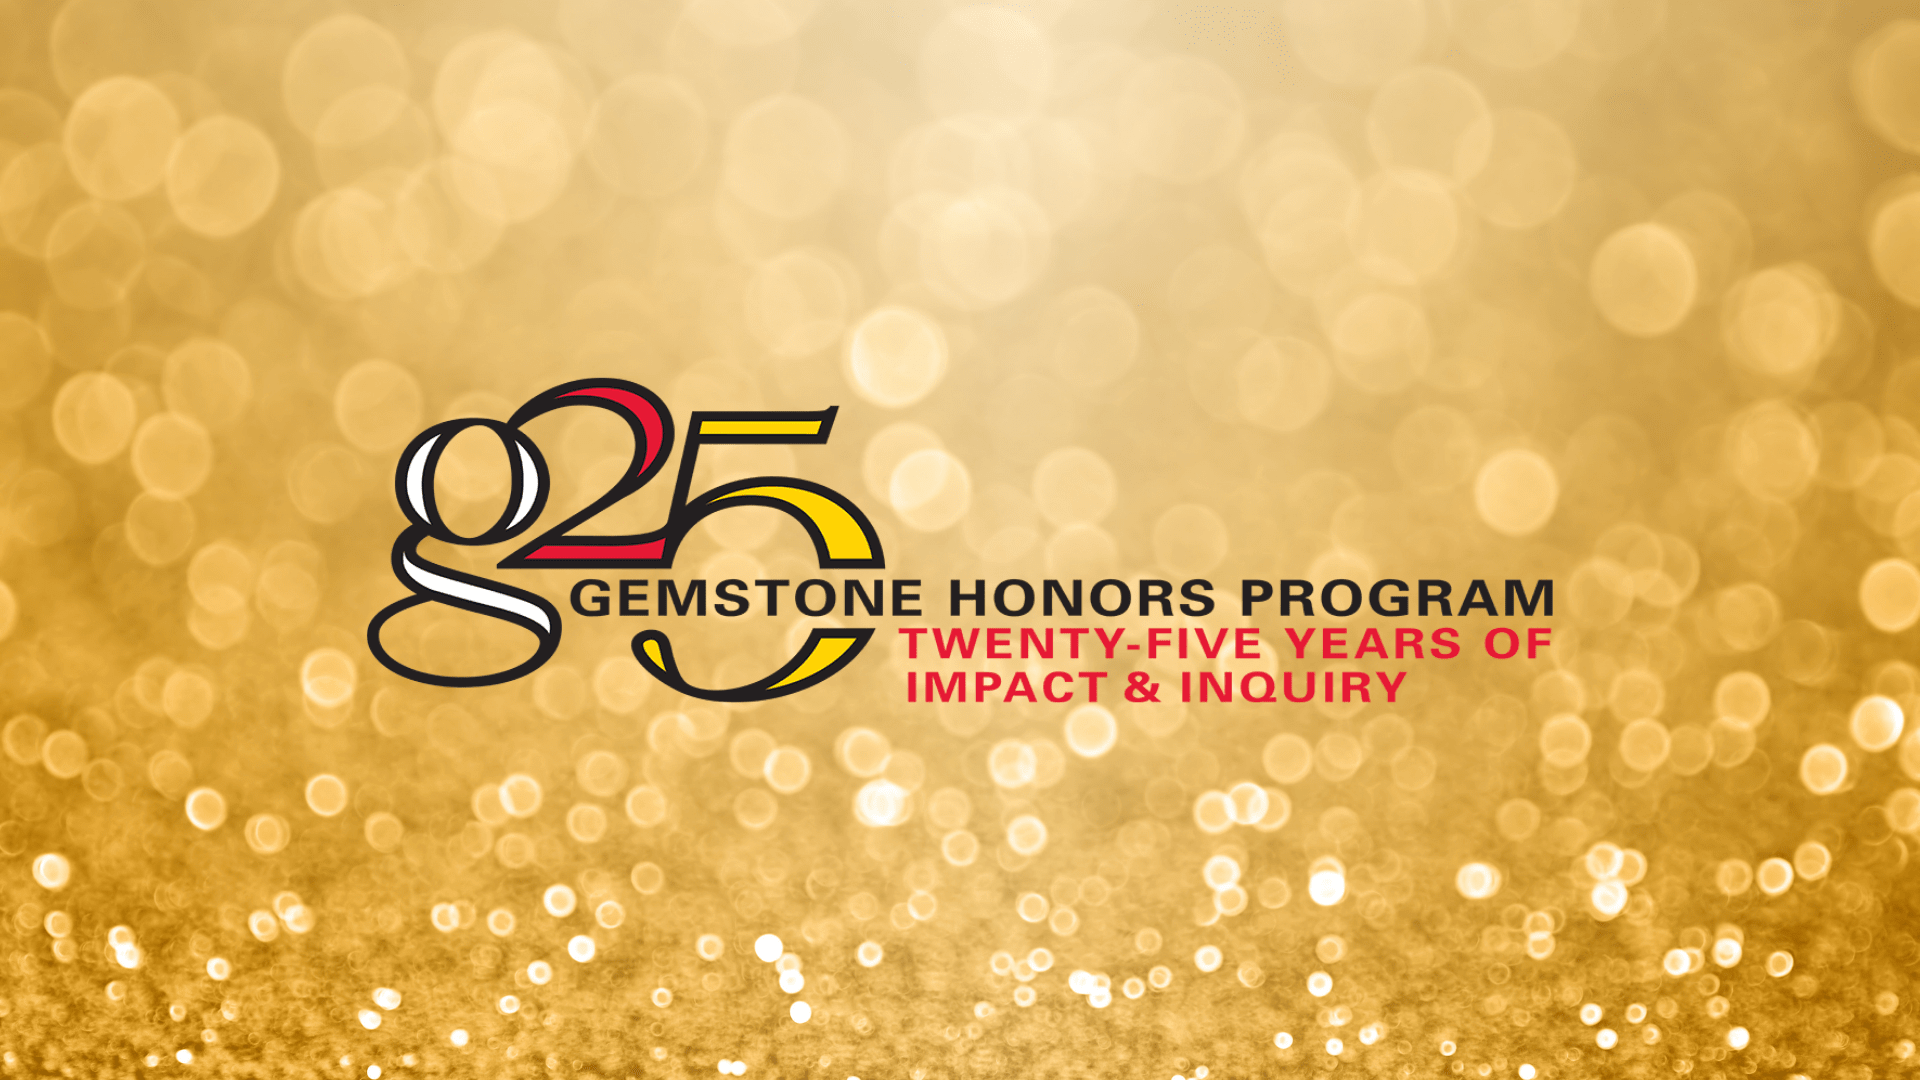 25th anniversary logo on gold confetti